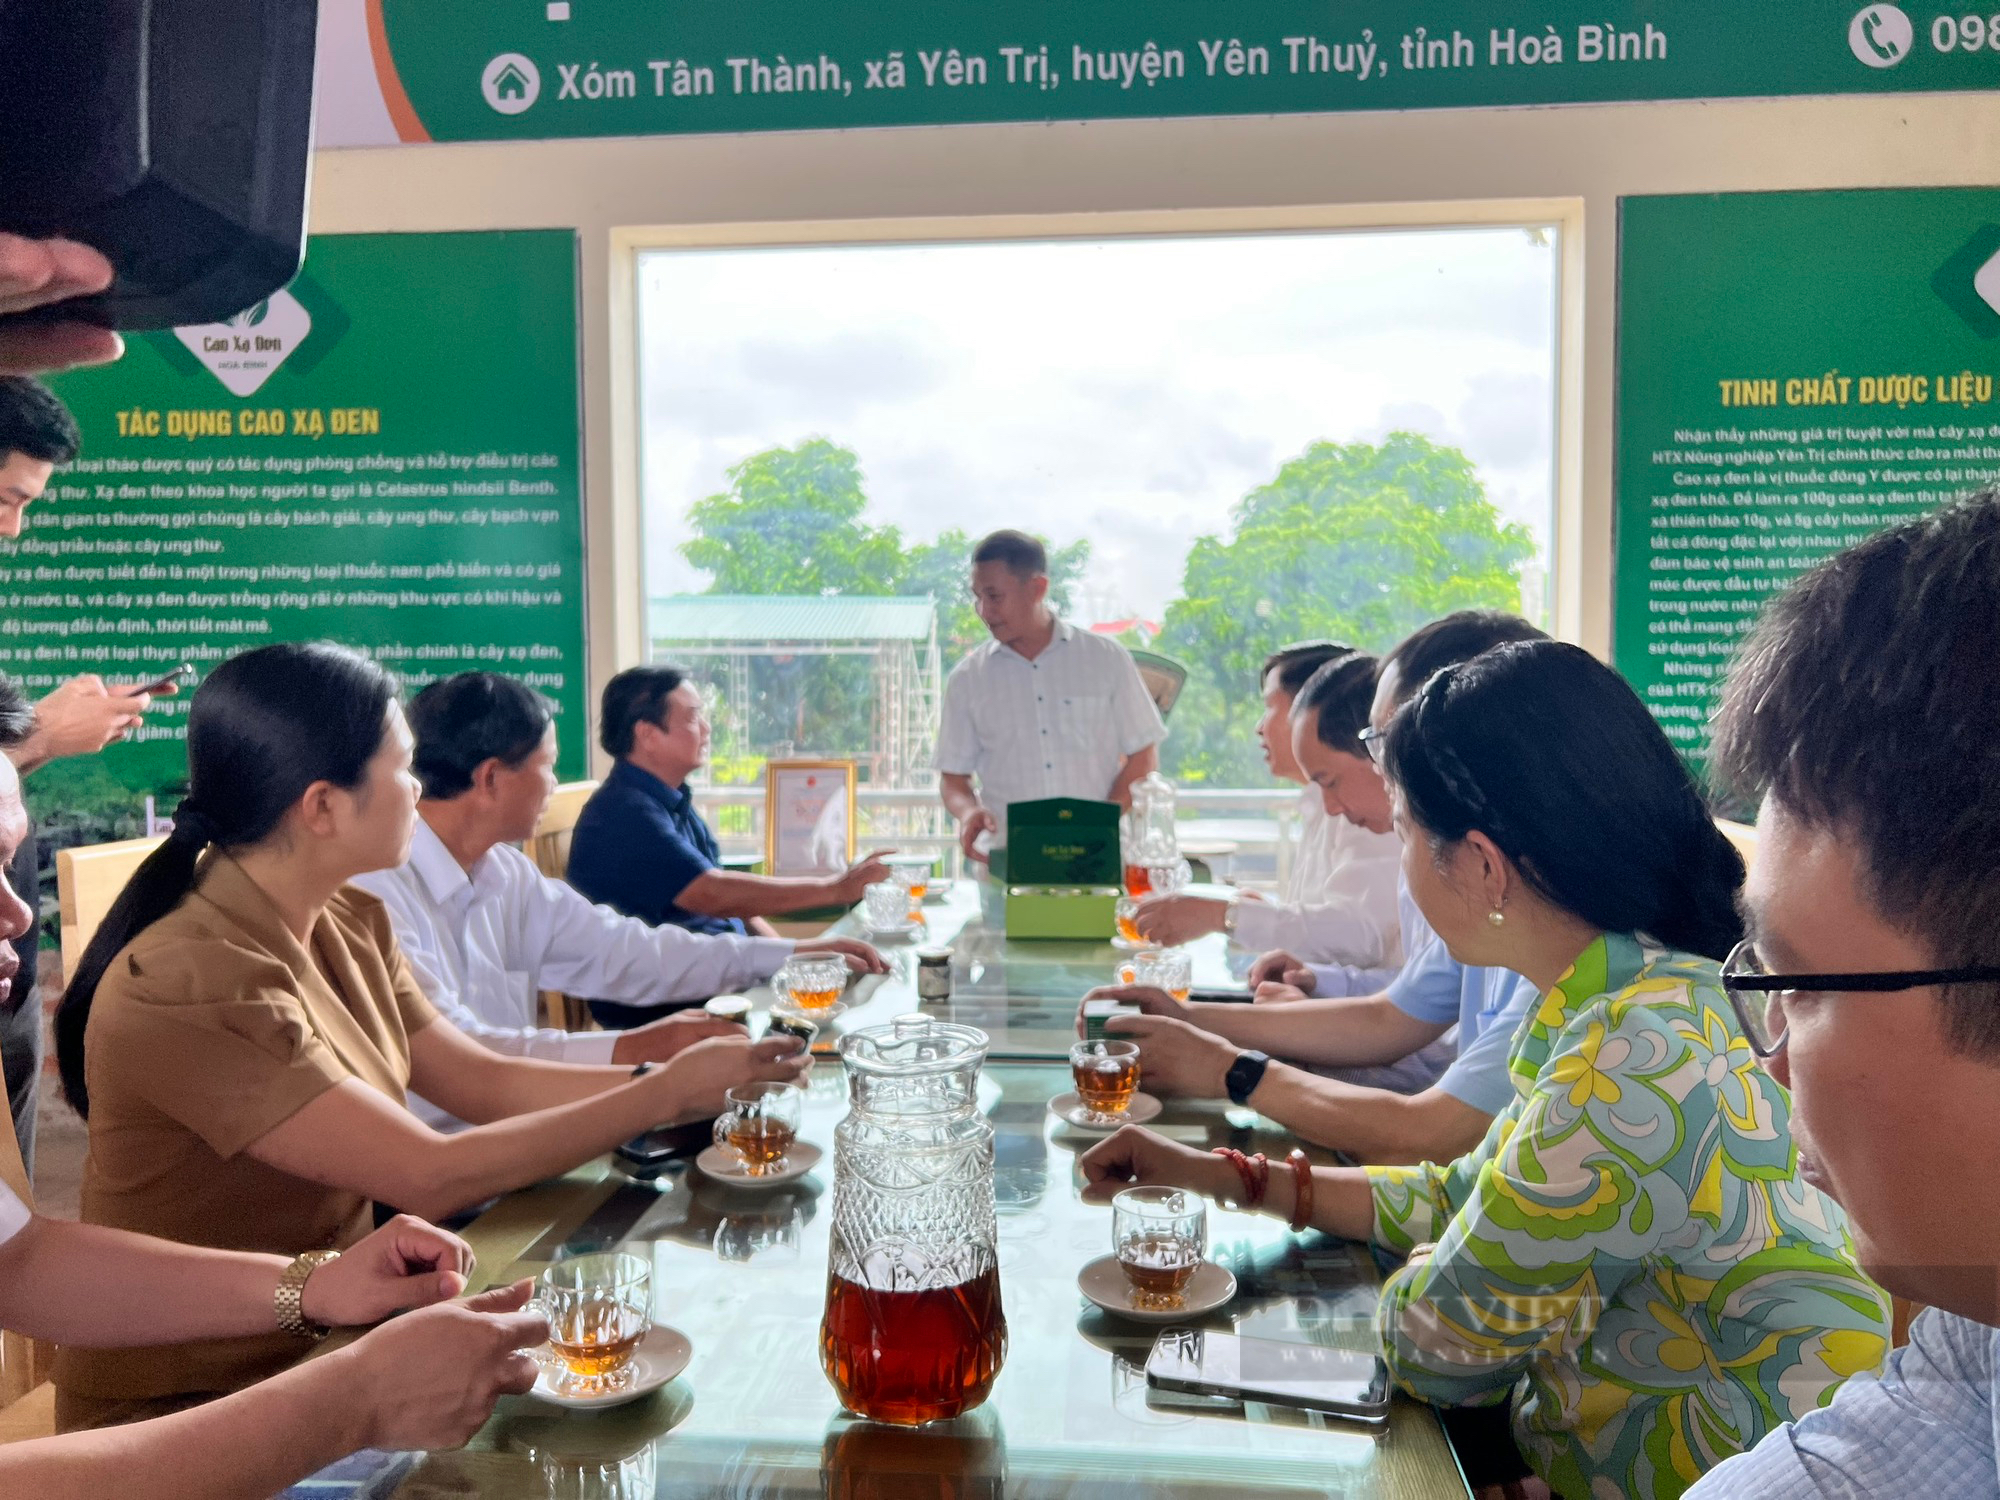 Bộ trưởng Bộ NNPTNT Lê Minh Hoan: “Khơi gợi nguồn lực địa phương” để phát triển dựa trên tài nguyên bản địa - Ảnh 3.